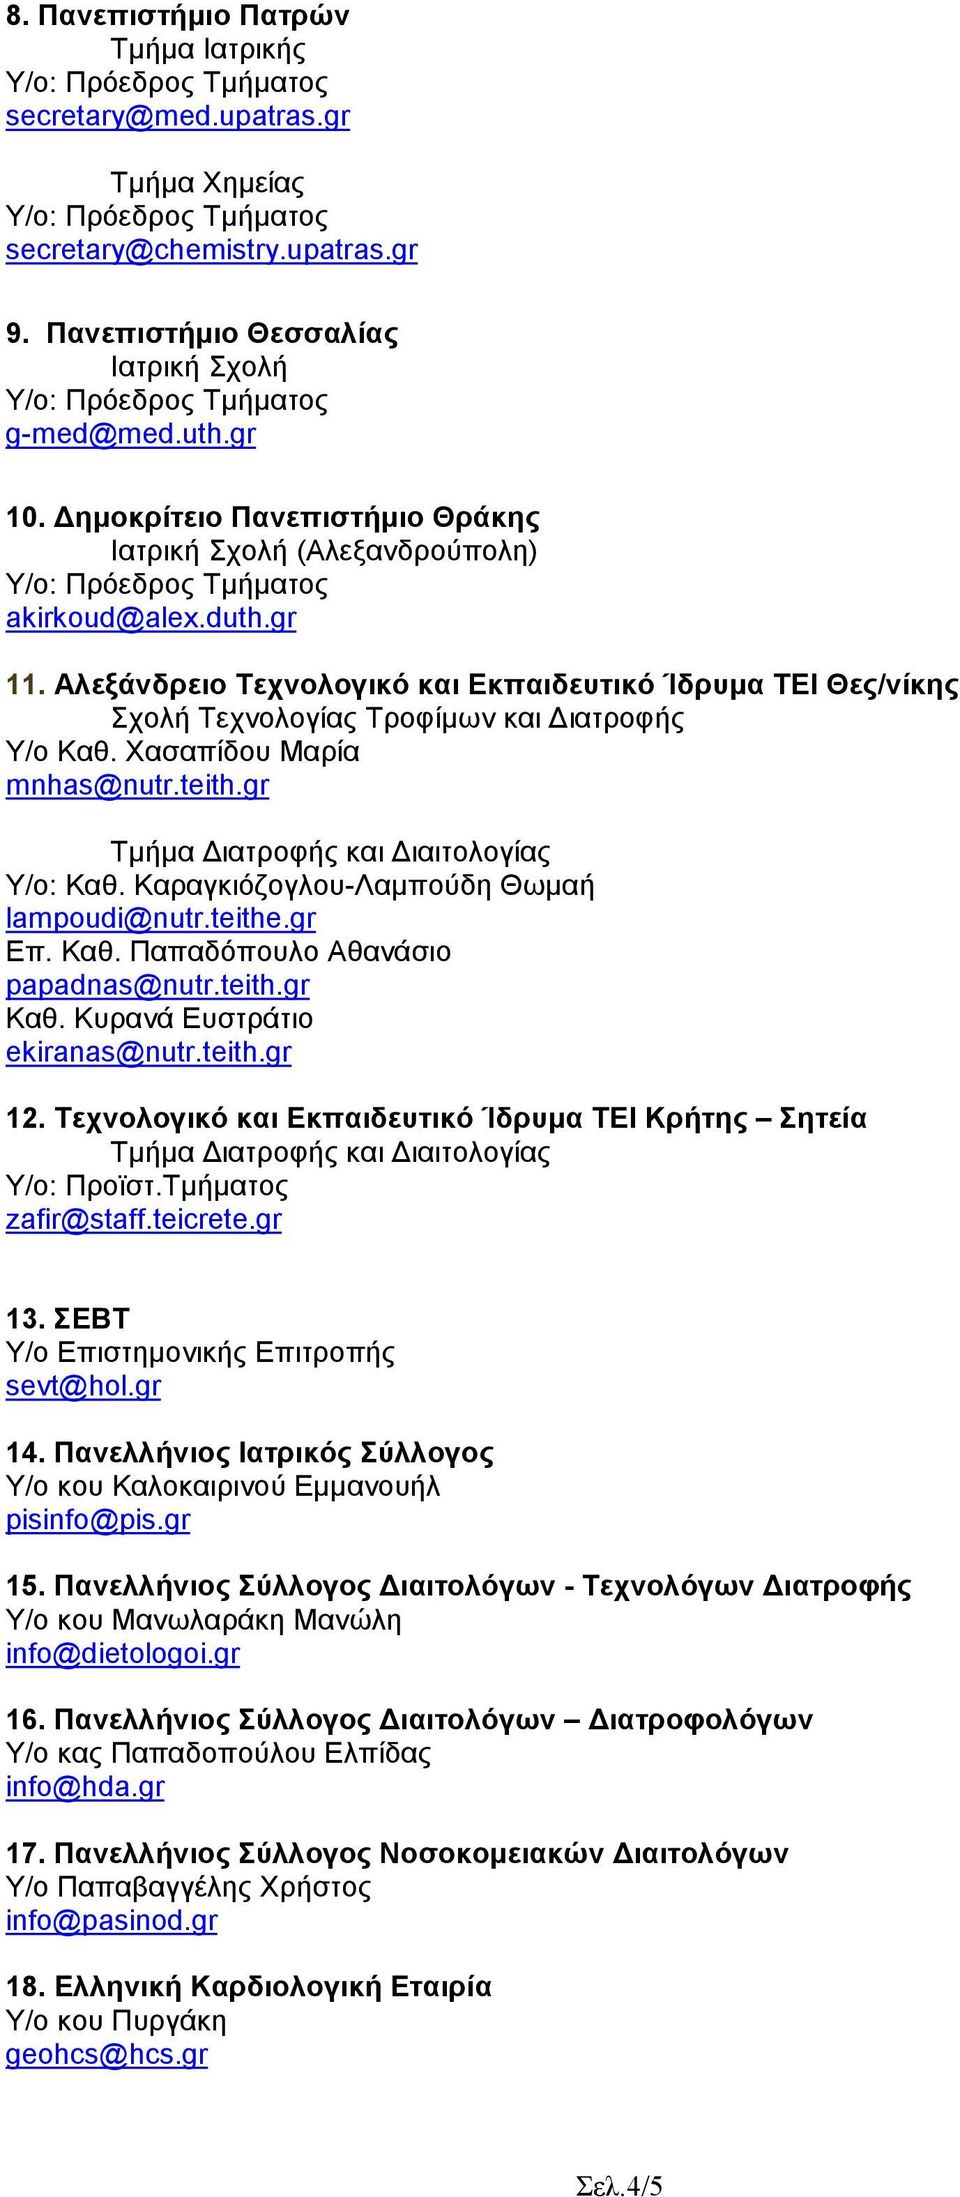 Χασαπίδου Μαρία mnhas@nutr.teith.gr Υ/ο: Καθ. Καραγκιόζογλου-Λαµπούδη Θωµαή lampoudi@nutr.teithe.gr Επ. Καθ. Παπαδόπουλο Αθανάσιο papadnas@nutr.teith.gr Καθ. Κυρανά Ευστράτιο ekiranas@nutr.teith.gr 12.